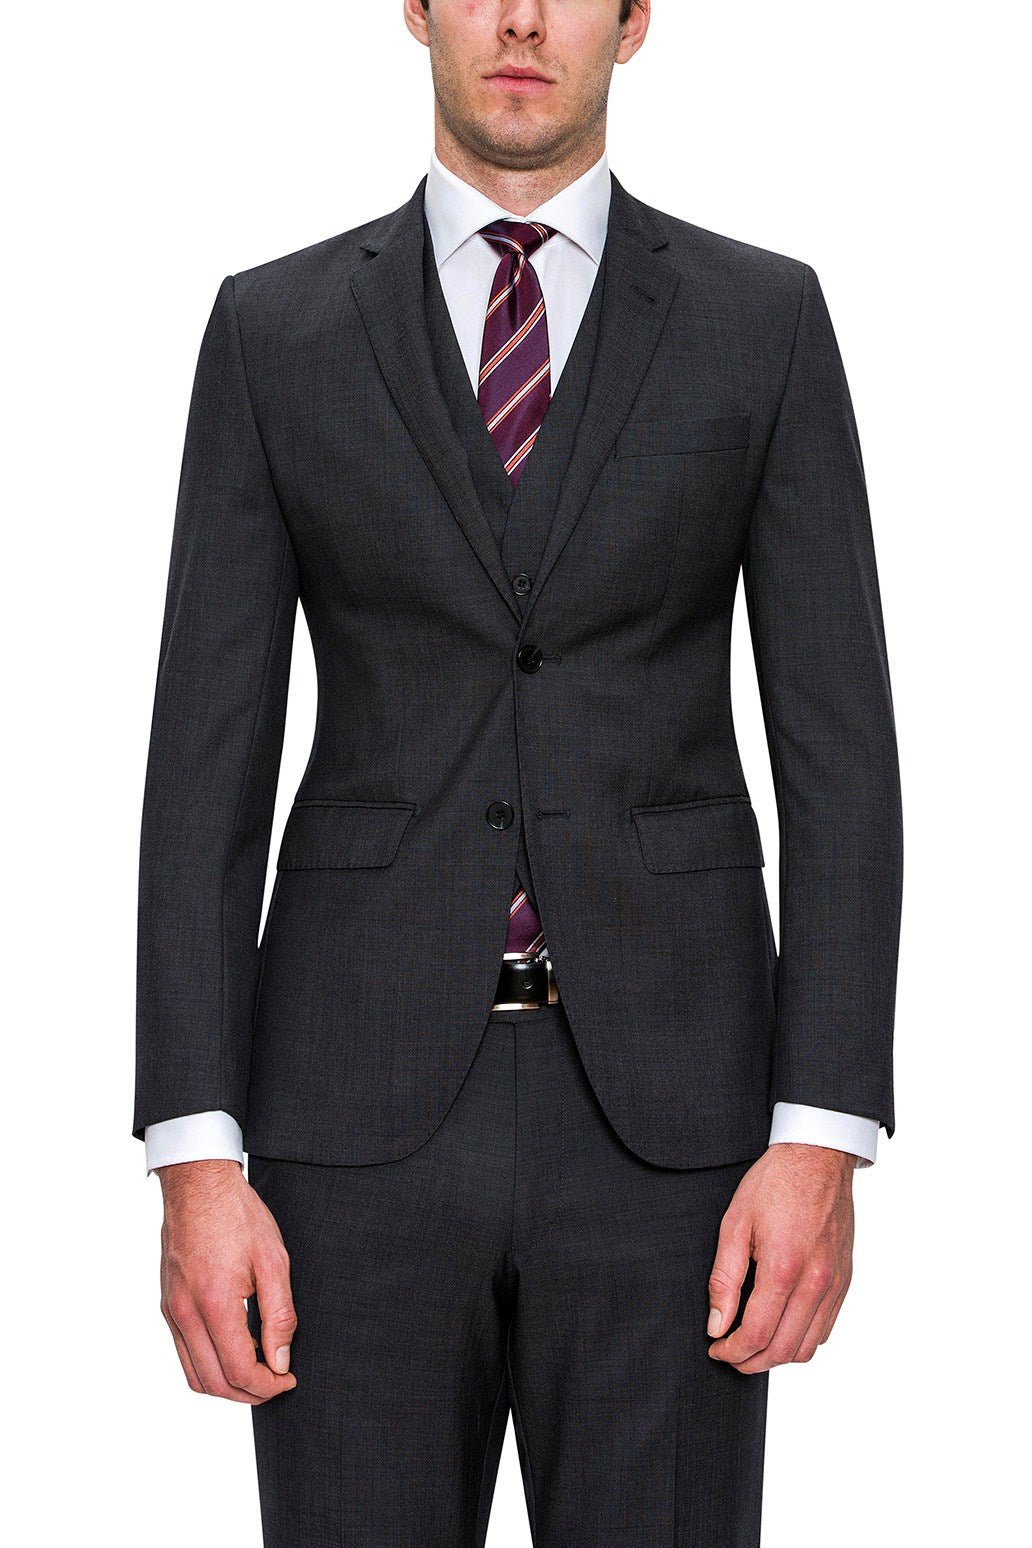 Cambridge F2800 Range Suit - Thomson's Suits Ltd - Charcoal - 88R - 7047